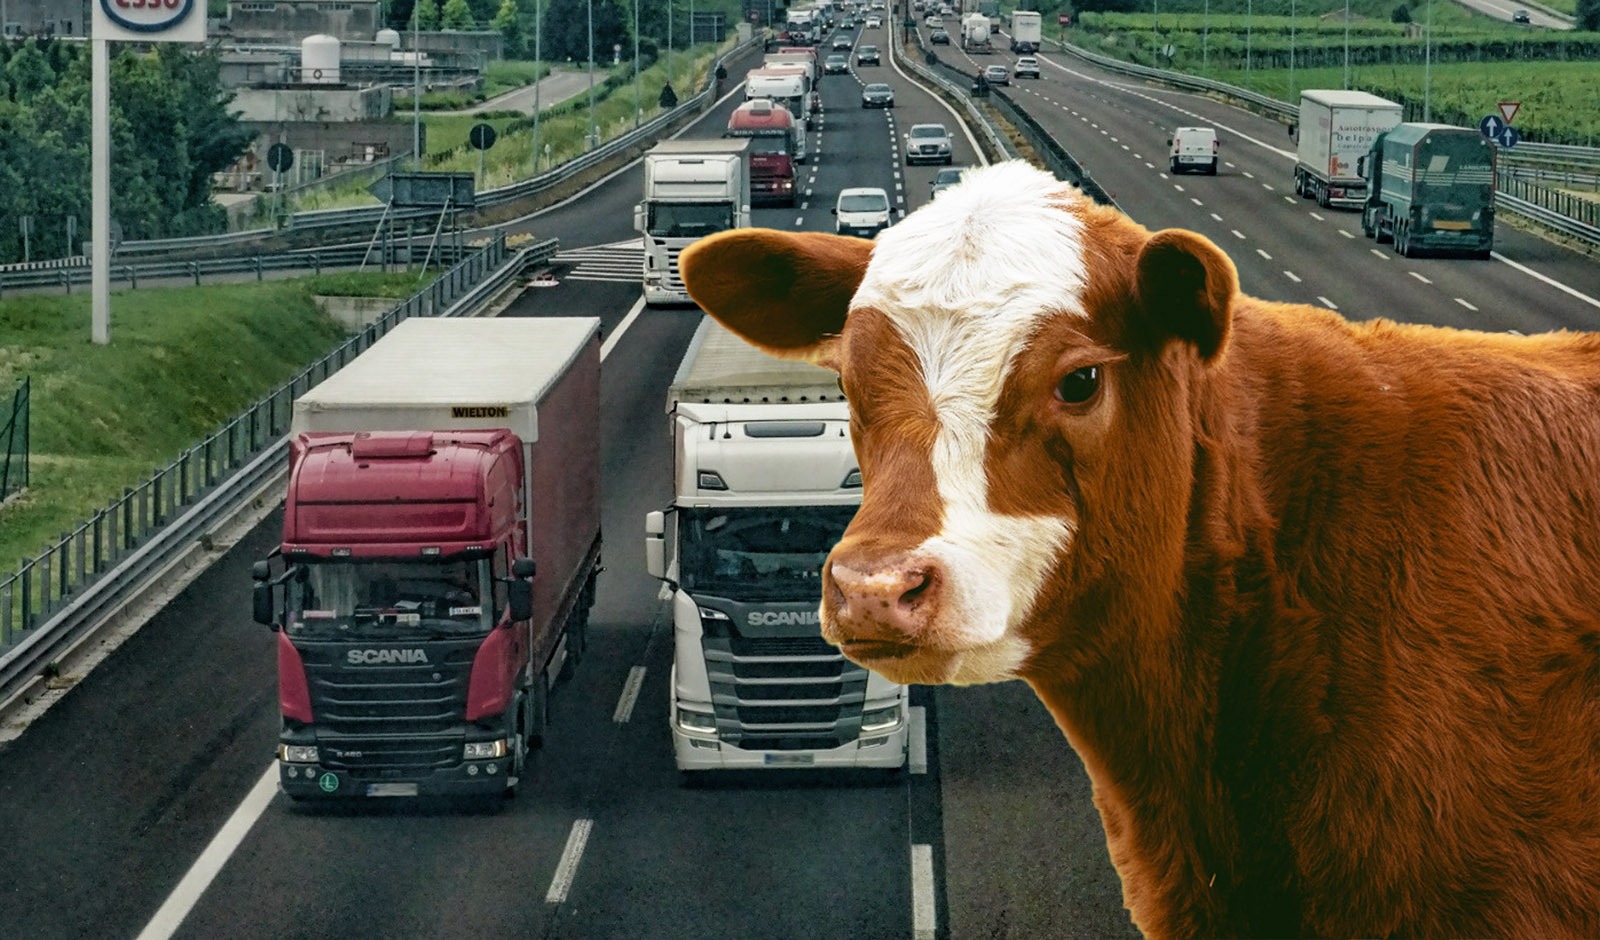 Kälber von Österreich bis in den Iran transportiert – Unnötige Tiertransporte müssen gestoppt werden!